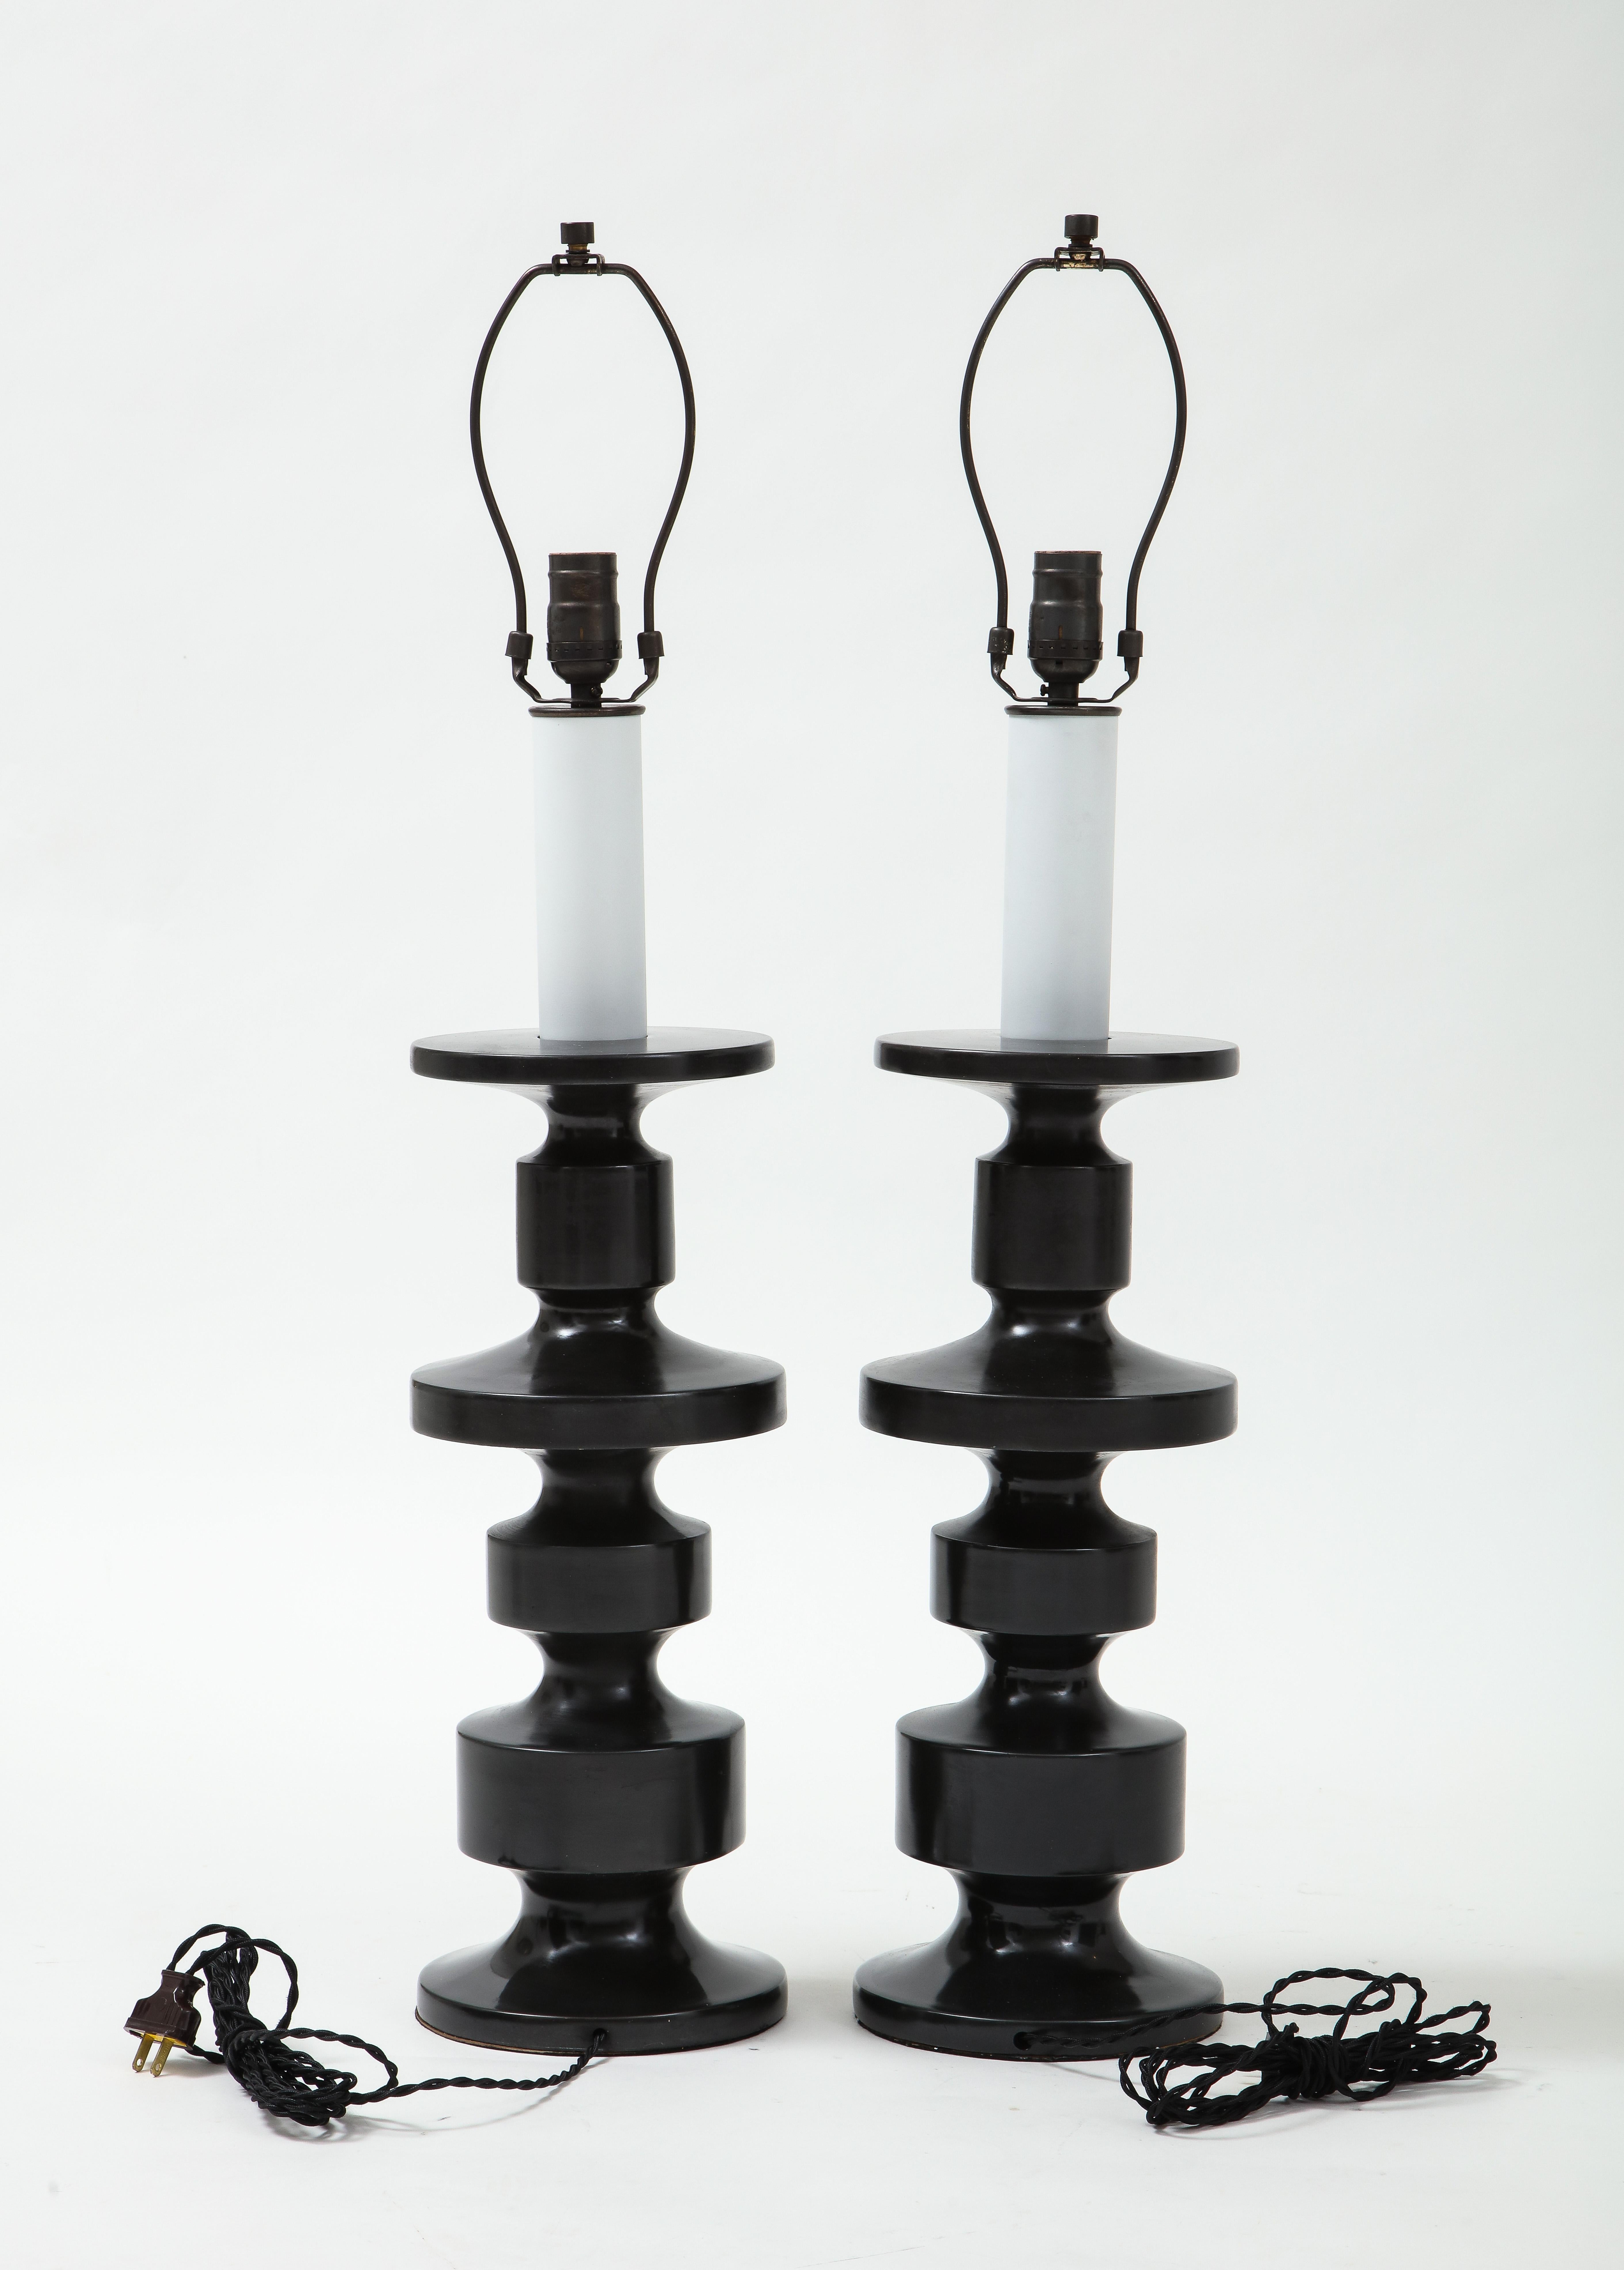 Lampes totem à finition personnalisée dans une finition mate de bronze foncé architectural. Recâblé pour une utilisation aux USA. ampoules de 100W max. La hauteur indiquée est une mesure globale incluant la harpe.